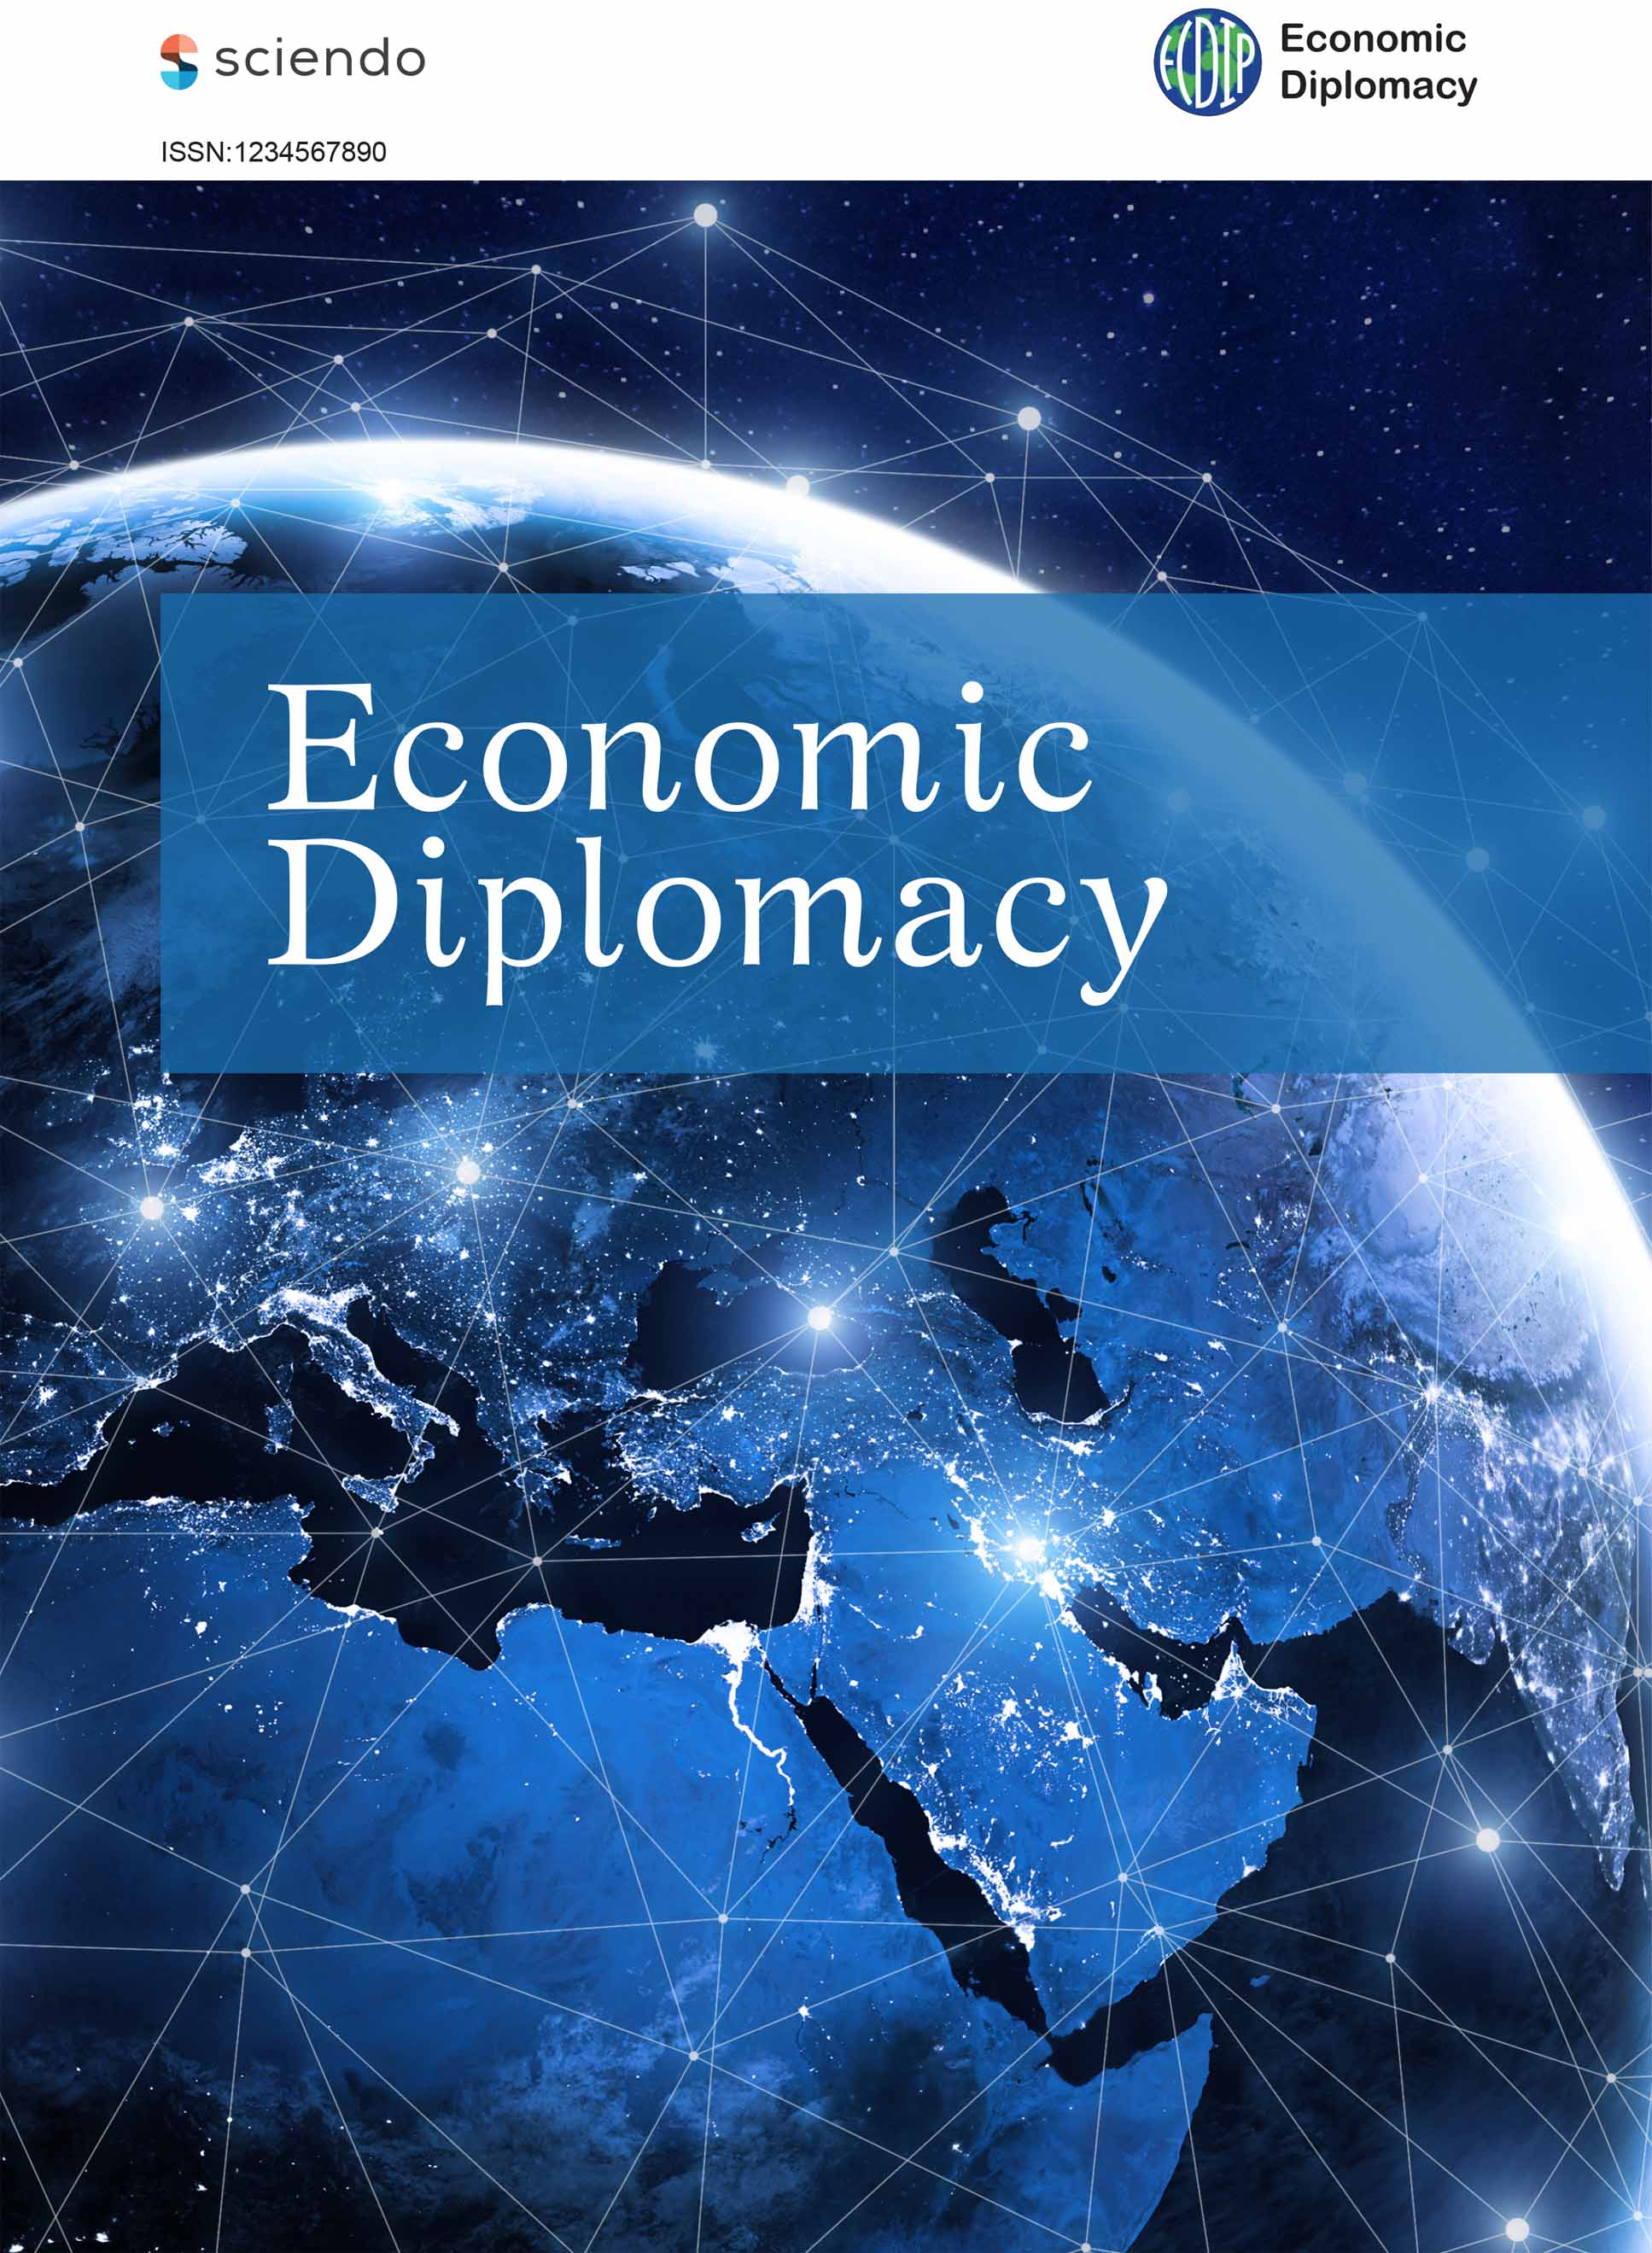 Economic Diplomacy Journal